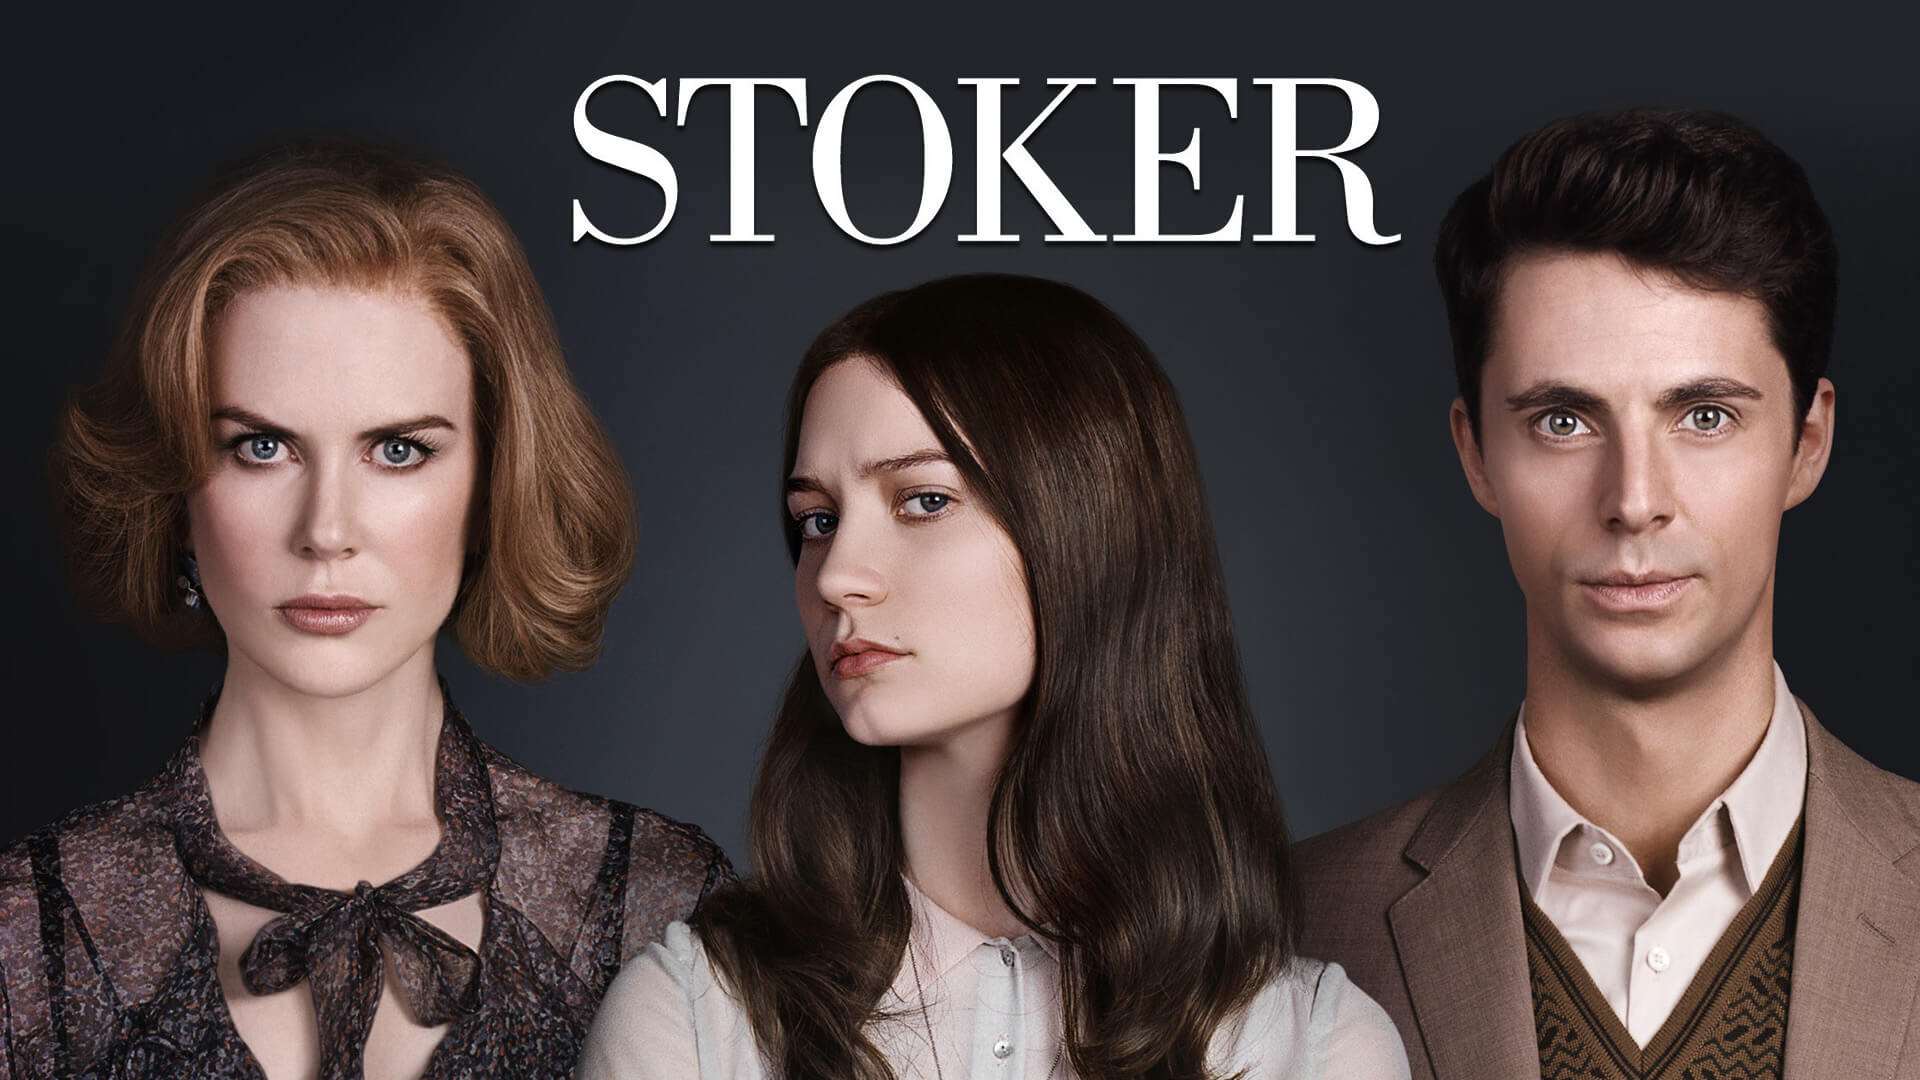 Stoker' Trailer: 